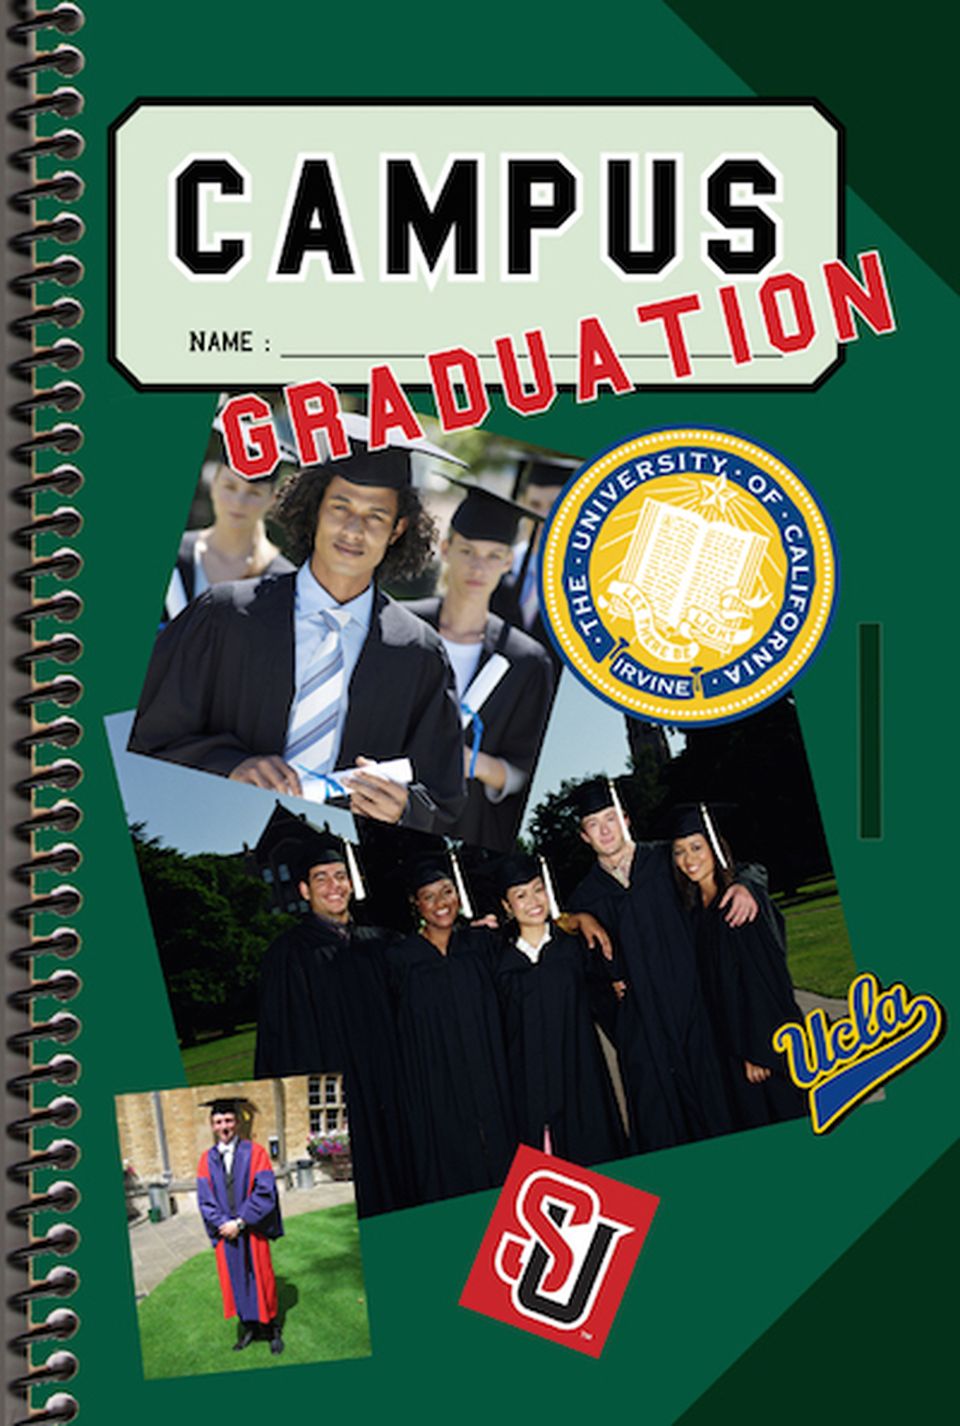 Campus - Graduation image